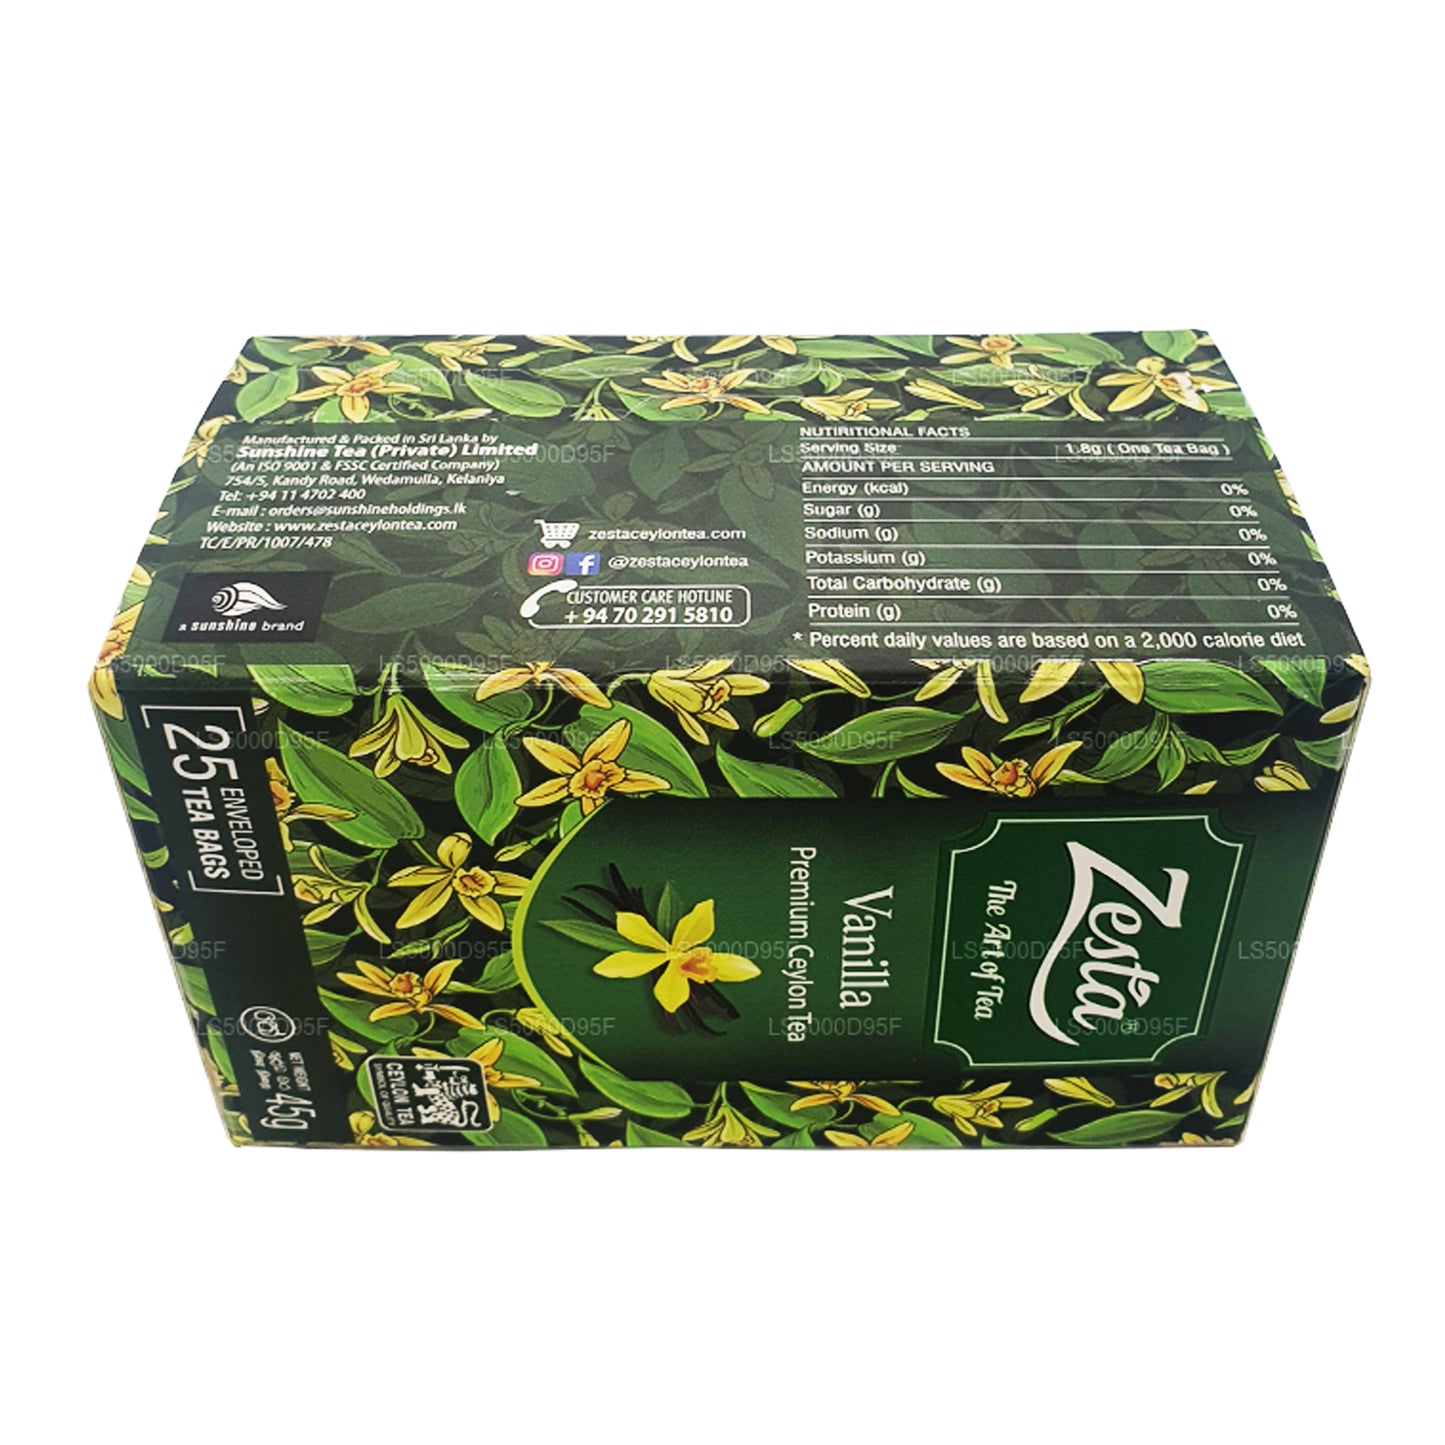 Черный чай Zesta Vanilla (45 г) 25 пакетиков